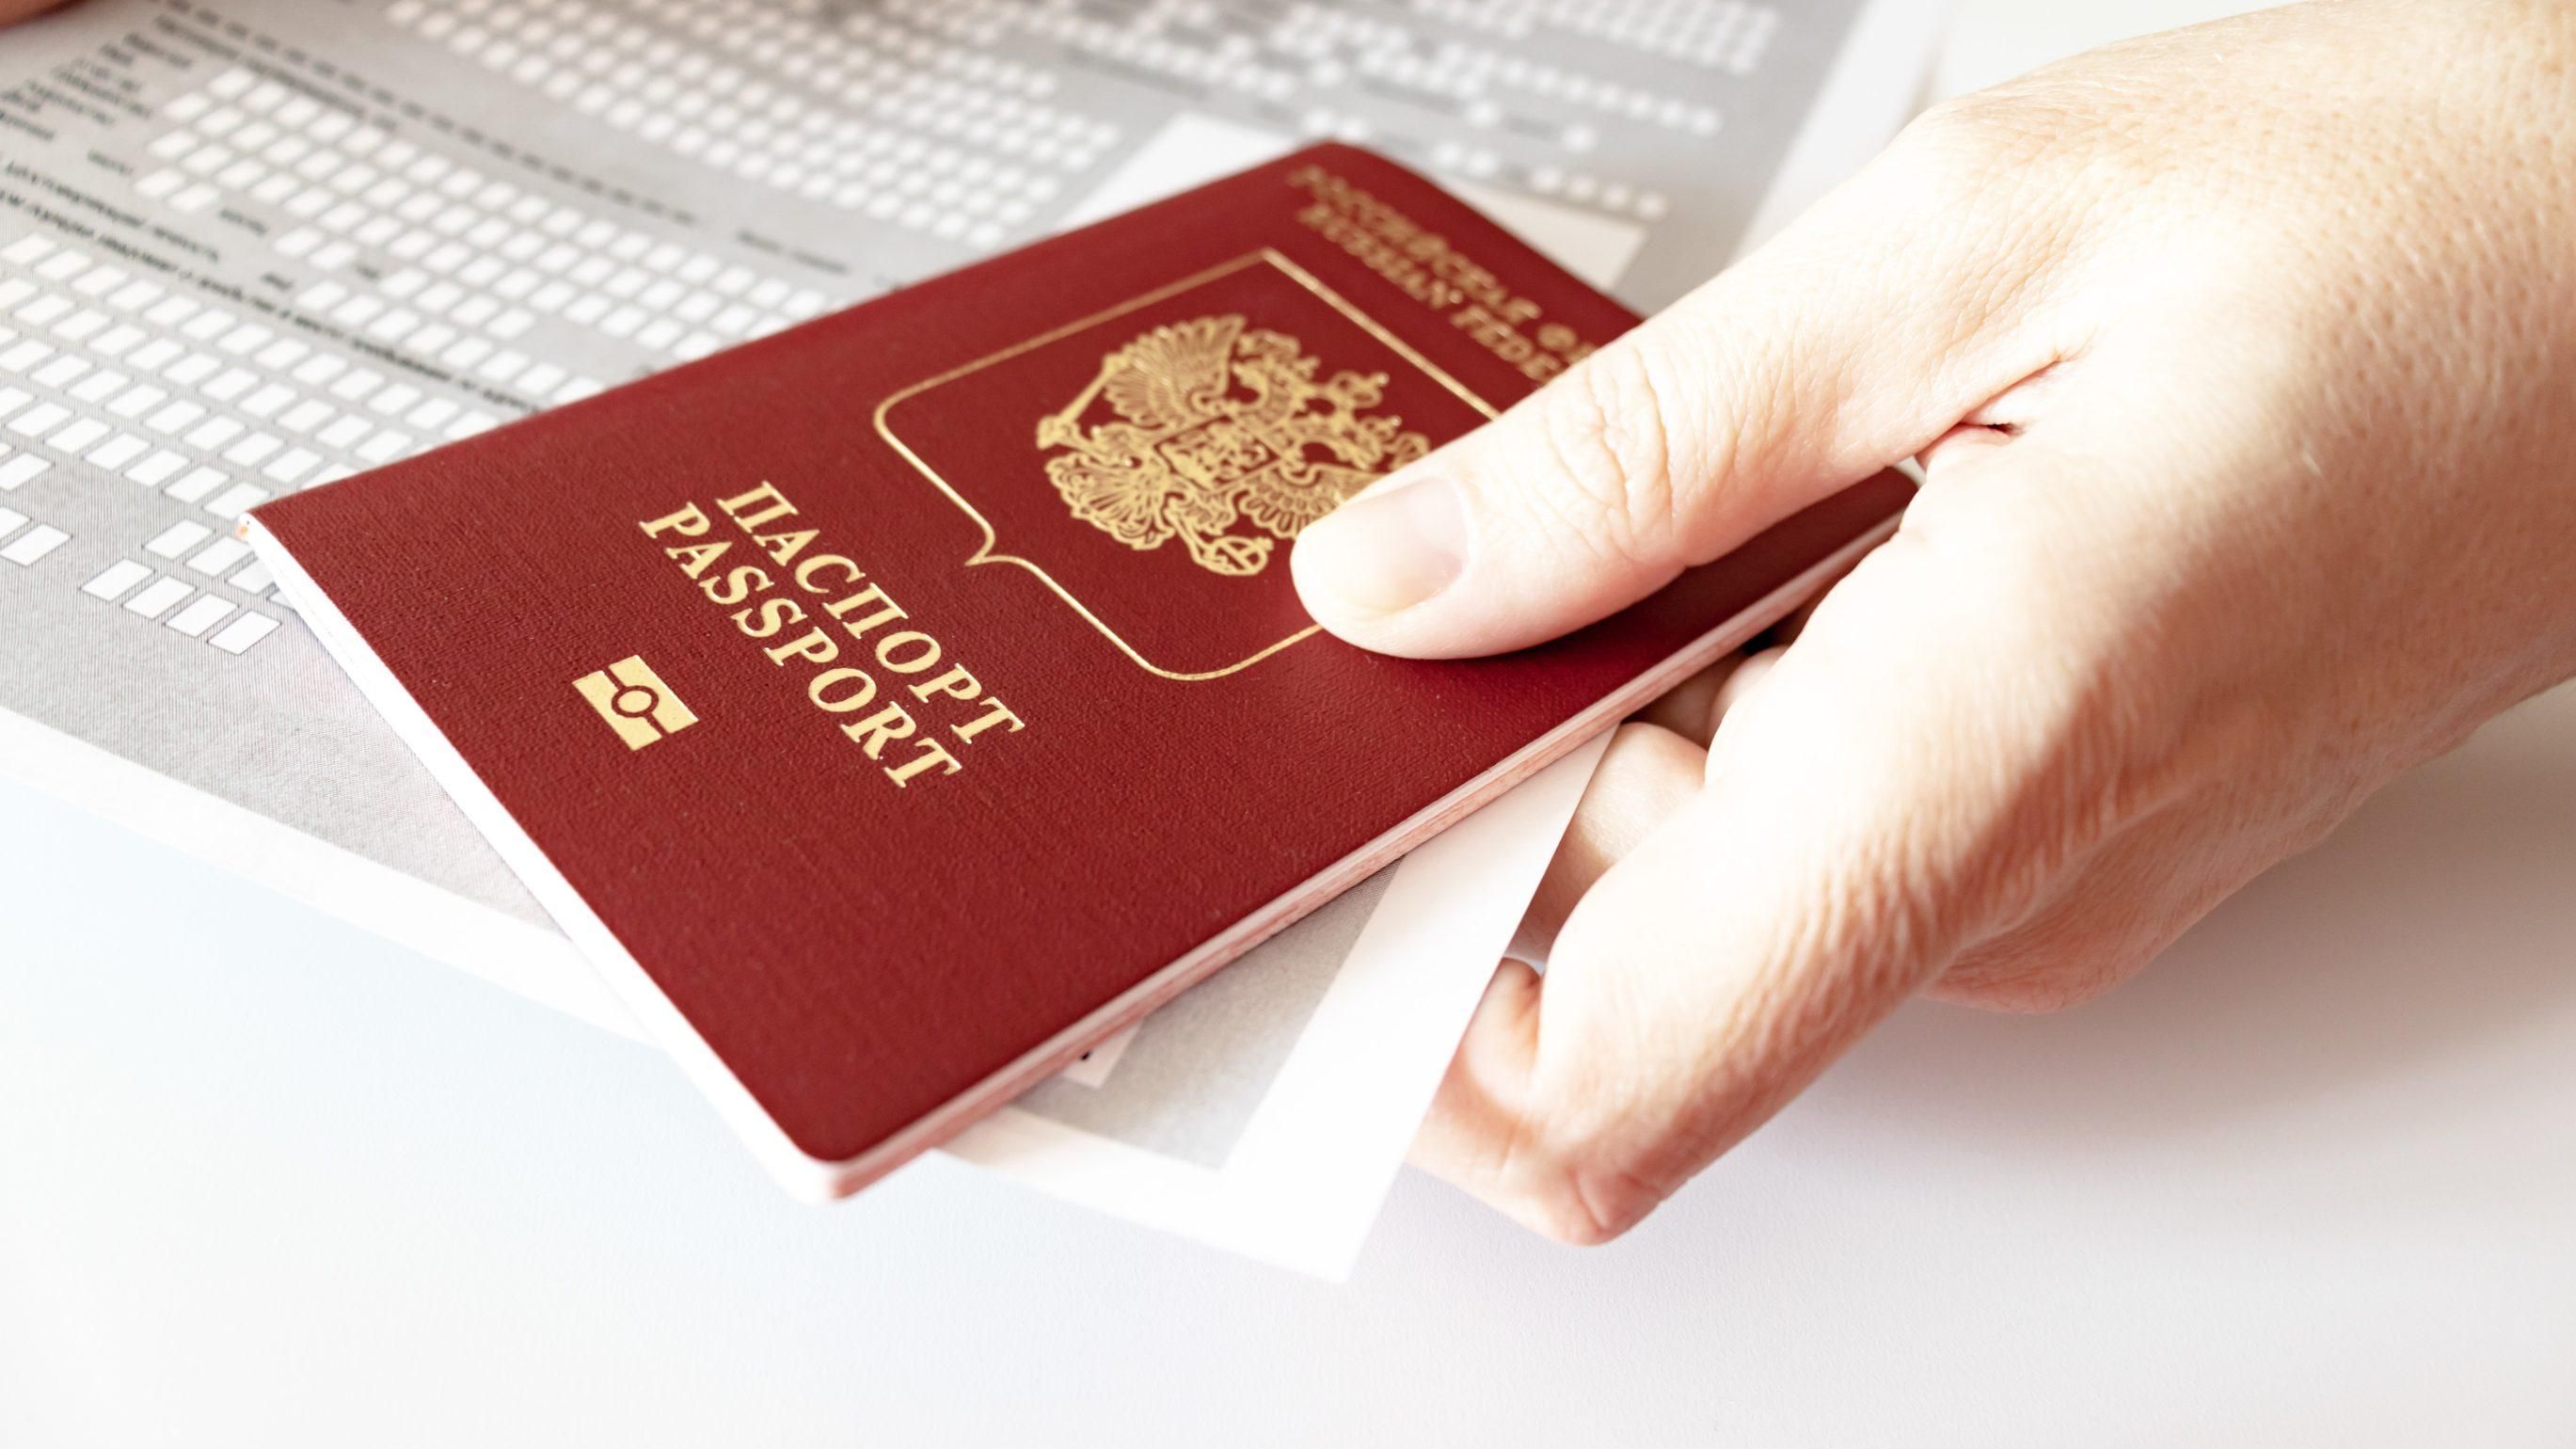 Германия выдает визы жителям оккупированного Донбасса с российскими паспортами, – СМИ